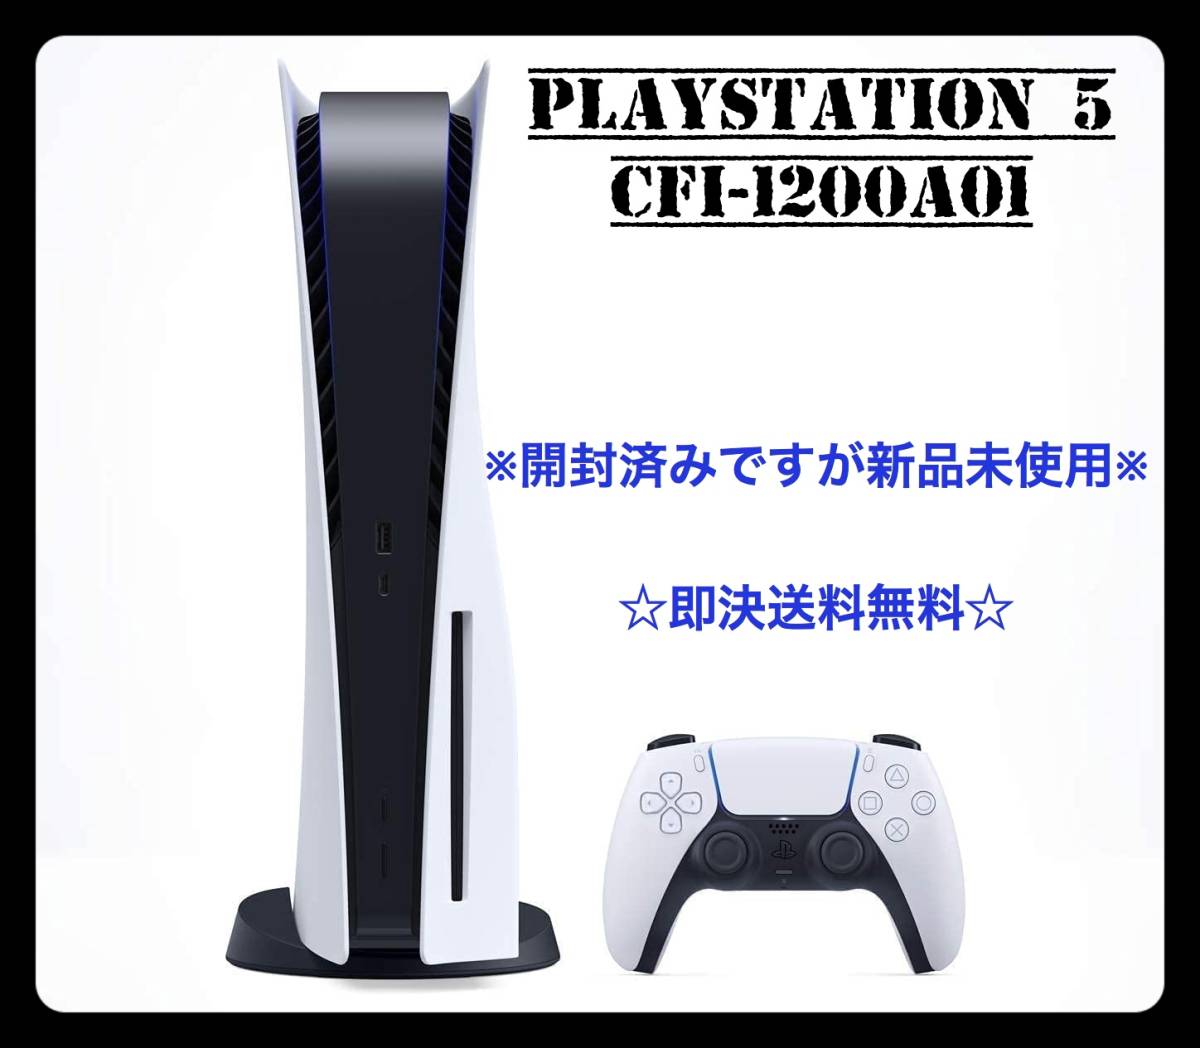 ☆開封済みですが新品未使用です!! PlayStation 5 CFI-1200A01 PS5